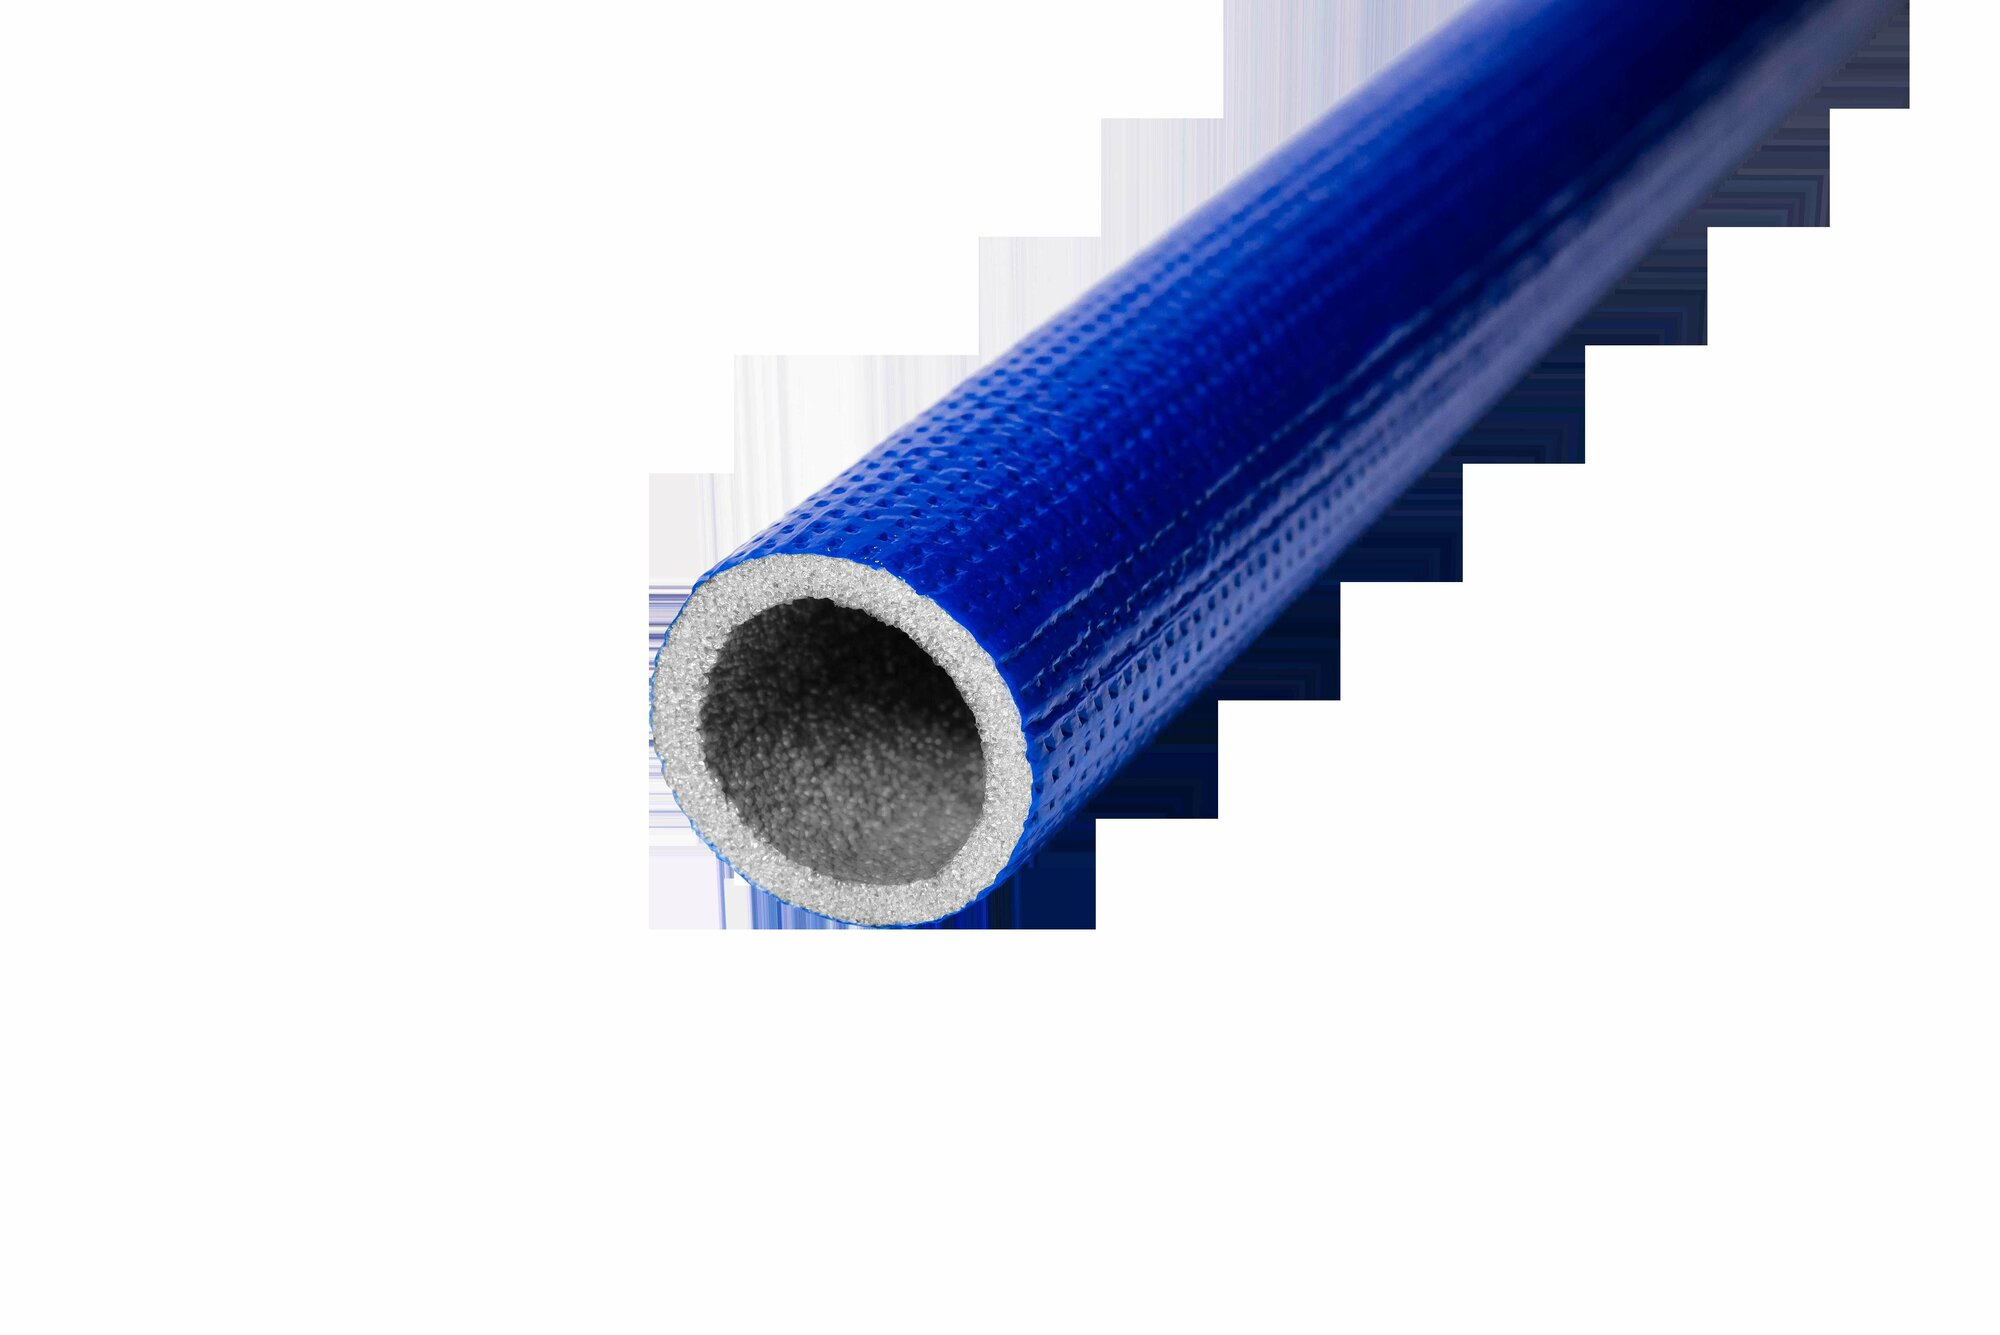 Изоляция для труб K-Flex Compact ?28/4 мм 10 м полиэтилен цвет синий